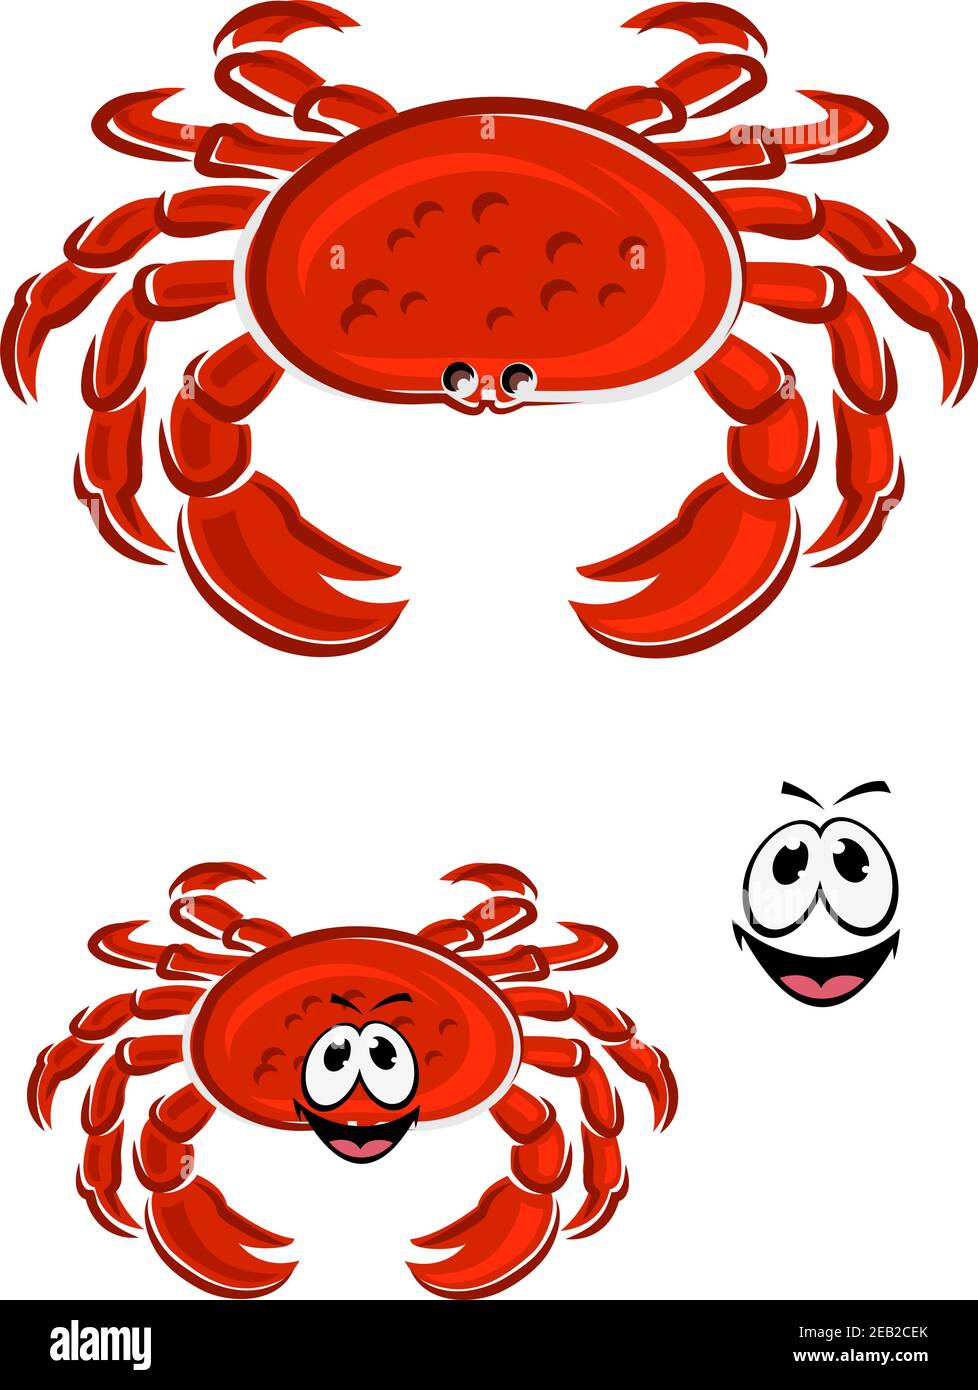 Divertente personaggio rosso granchio cartoon con spessa conchiglia blindata, artigli e faccia sorridente per mascotte o disegno di pesce Illustrazione Vettoriale